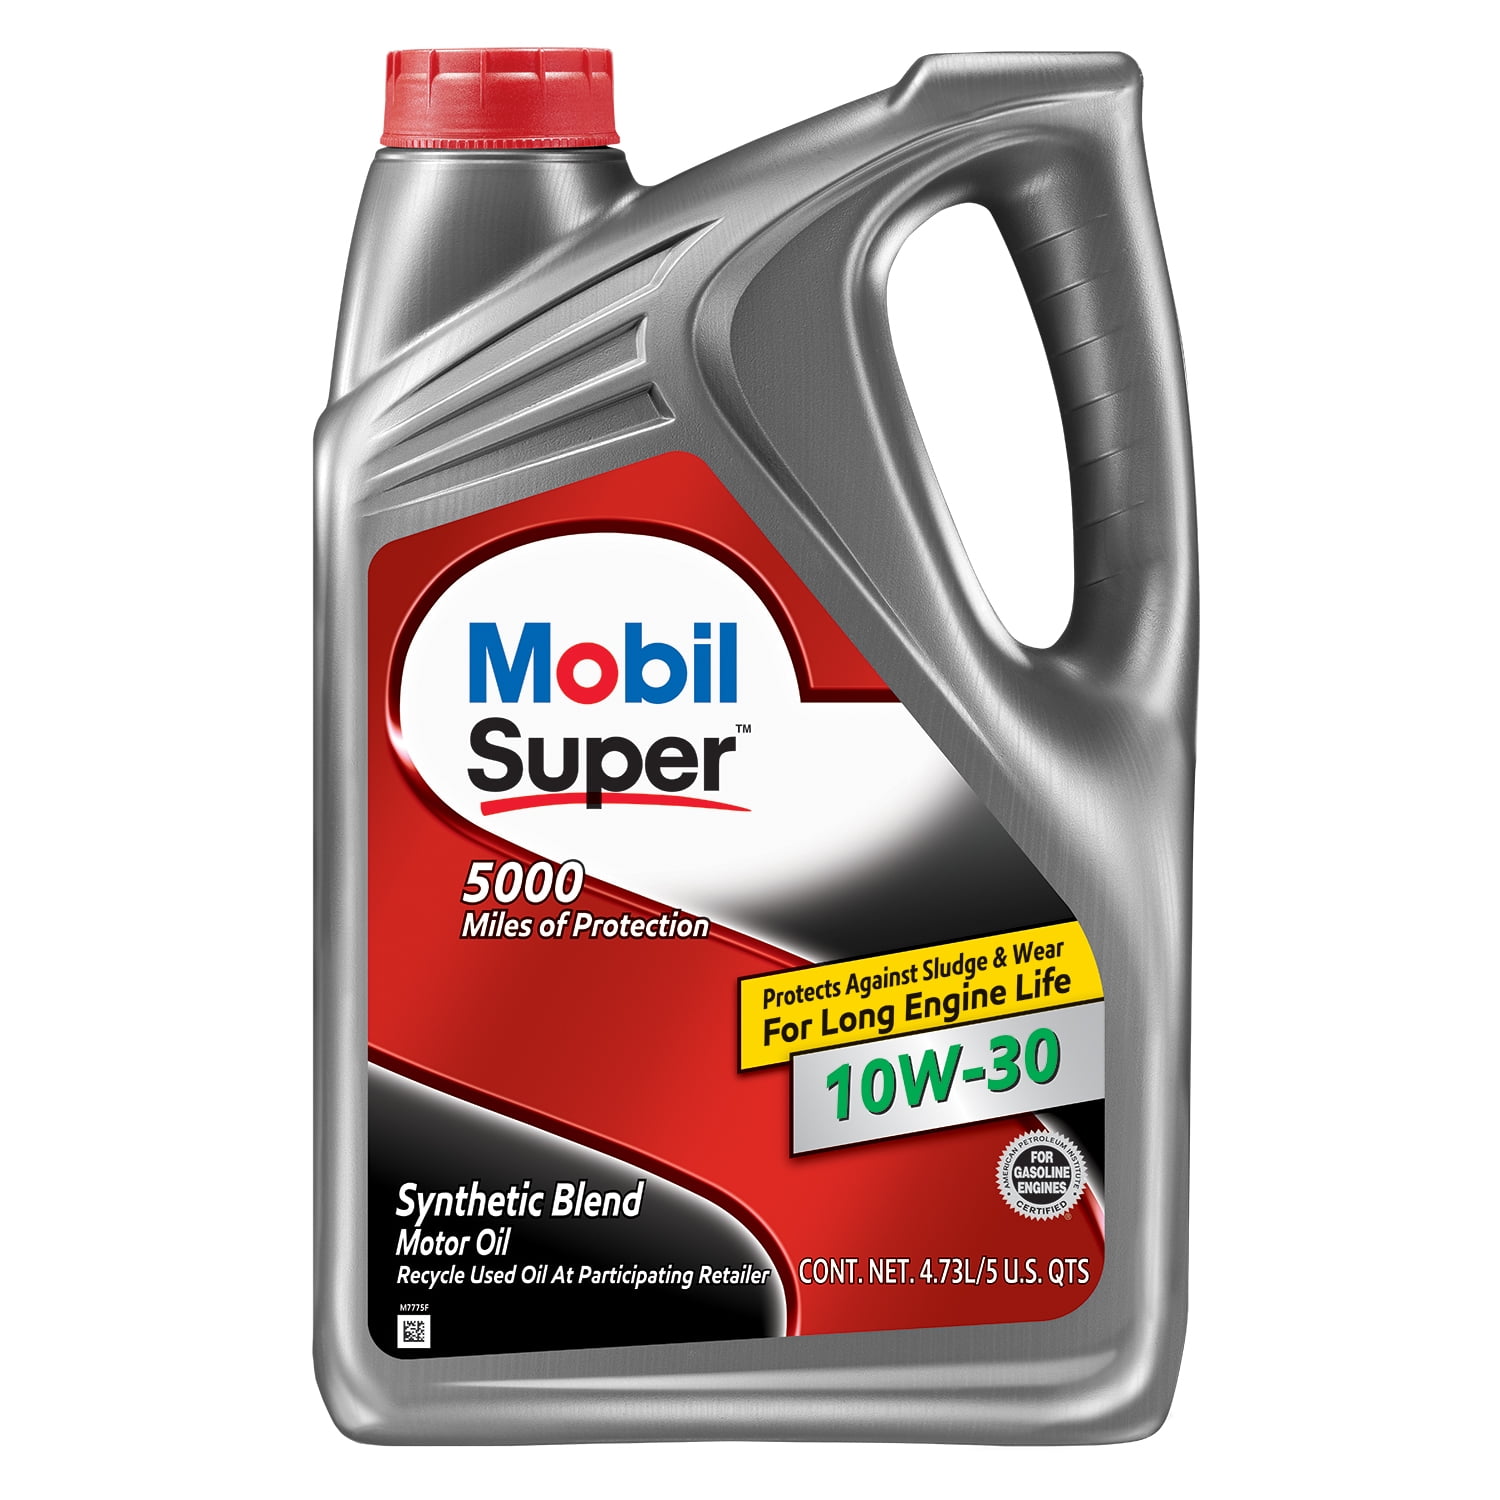 Mobil Super Blend Motor Oil 10W-30, 5 qt Walmart.com